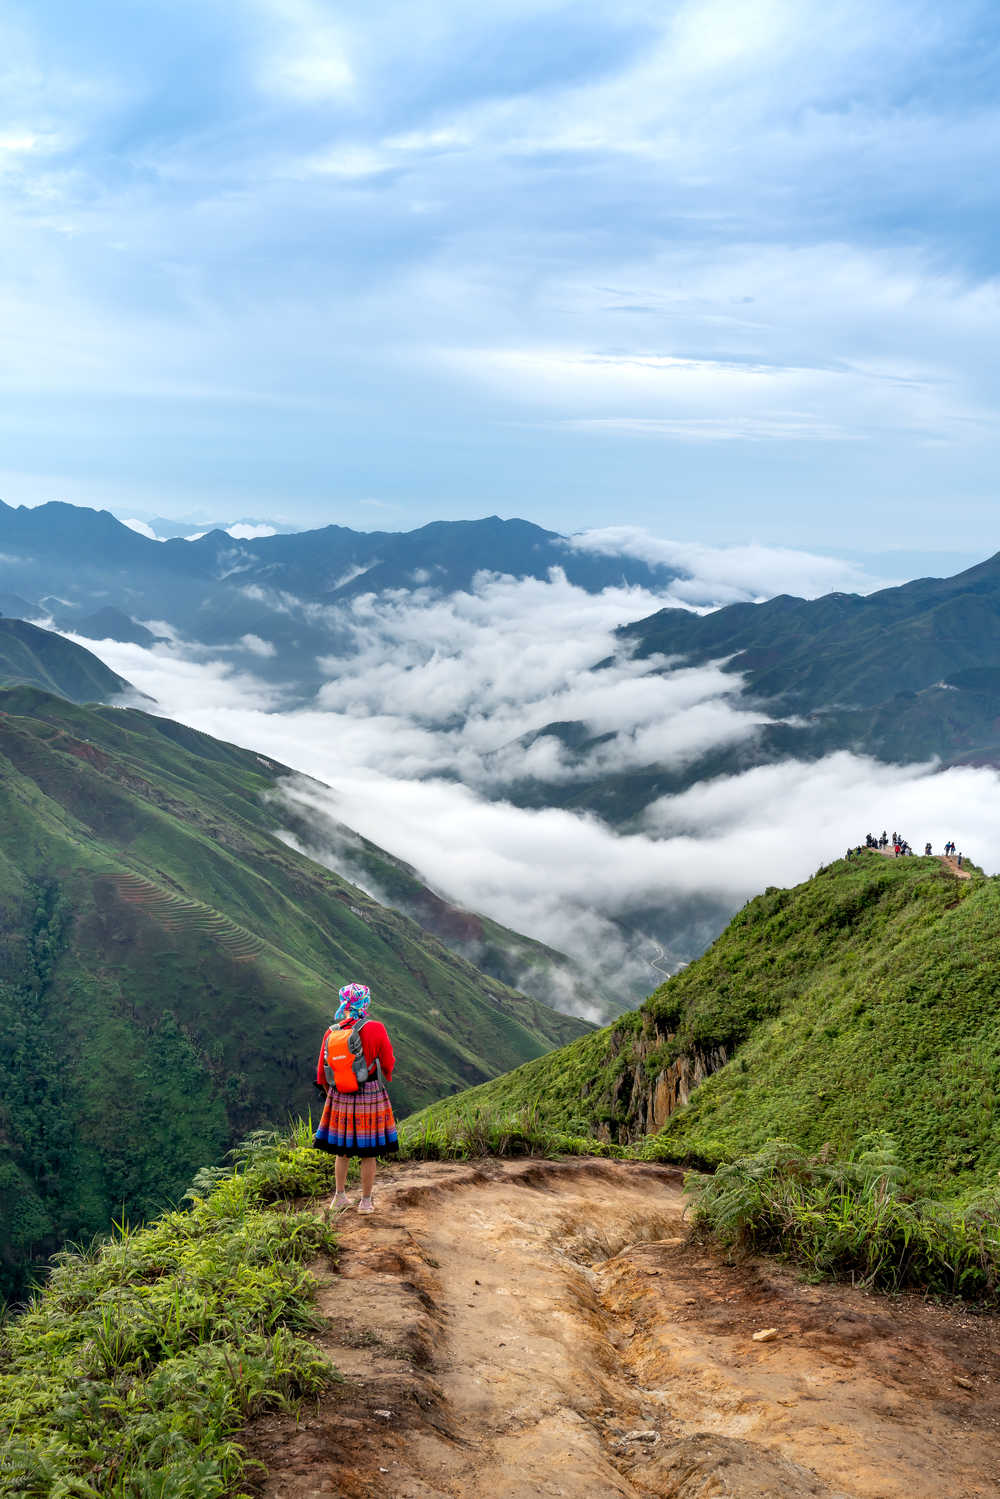 Randonneuse sur le sentier au sommet des montagnes Hang Dong, commune de Hang Dong, Vietnam